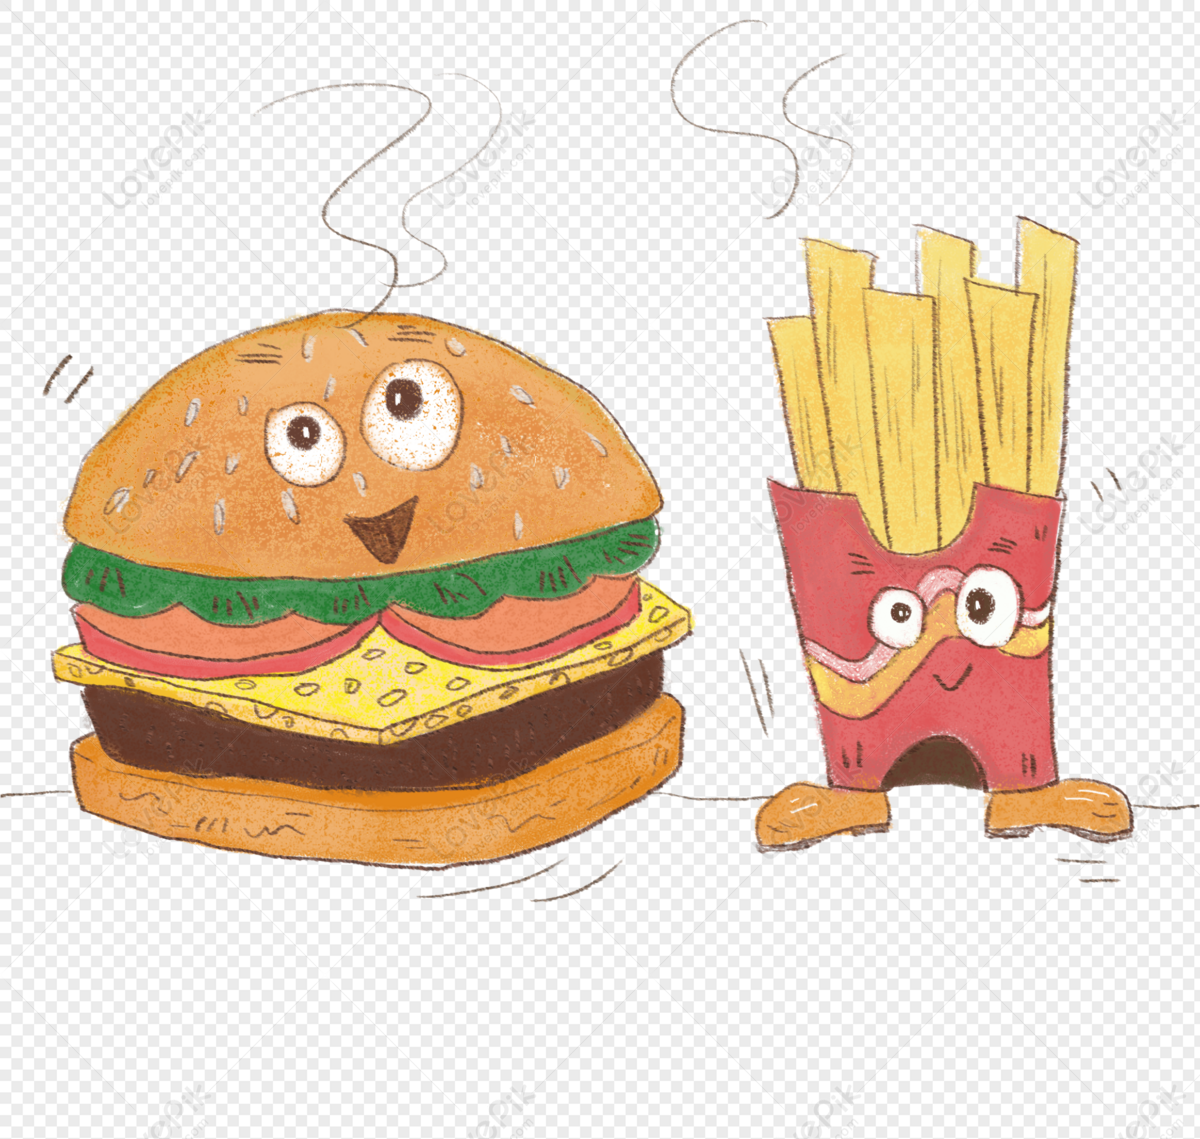 Hamburger: Bạn là một người yêu thích đồ ăn đầy hương vị? Vậy thì đừng bỏ lỡ chiếc hamburger sẵn sàng phục vụ bạn với phần thịt bò được nướng giòn và được bọc trong lớp bánh mềm mại. Được nấu với các nguyên liệu tươi ngon và phong phú, hamburger sẽ khiến bạn hài lòng và đủ năng lượng cho cả ngày dài.